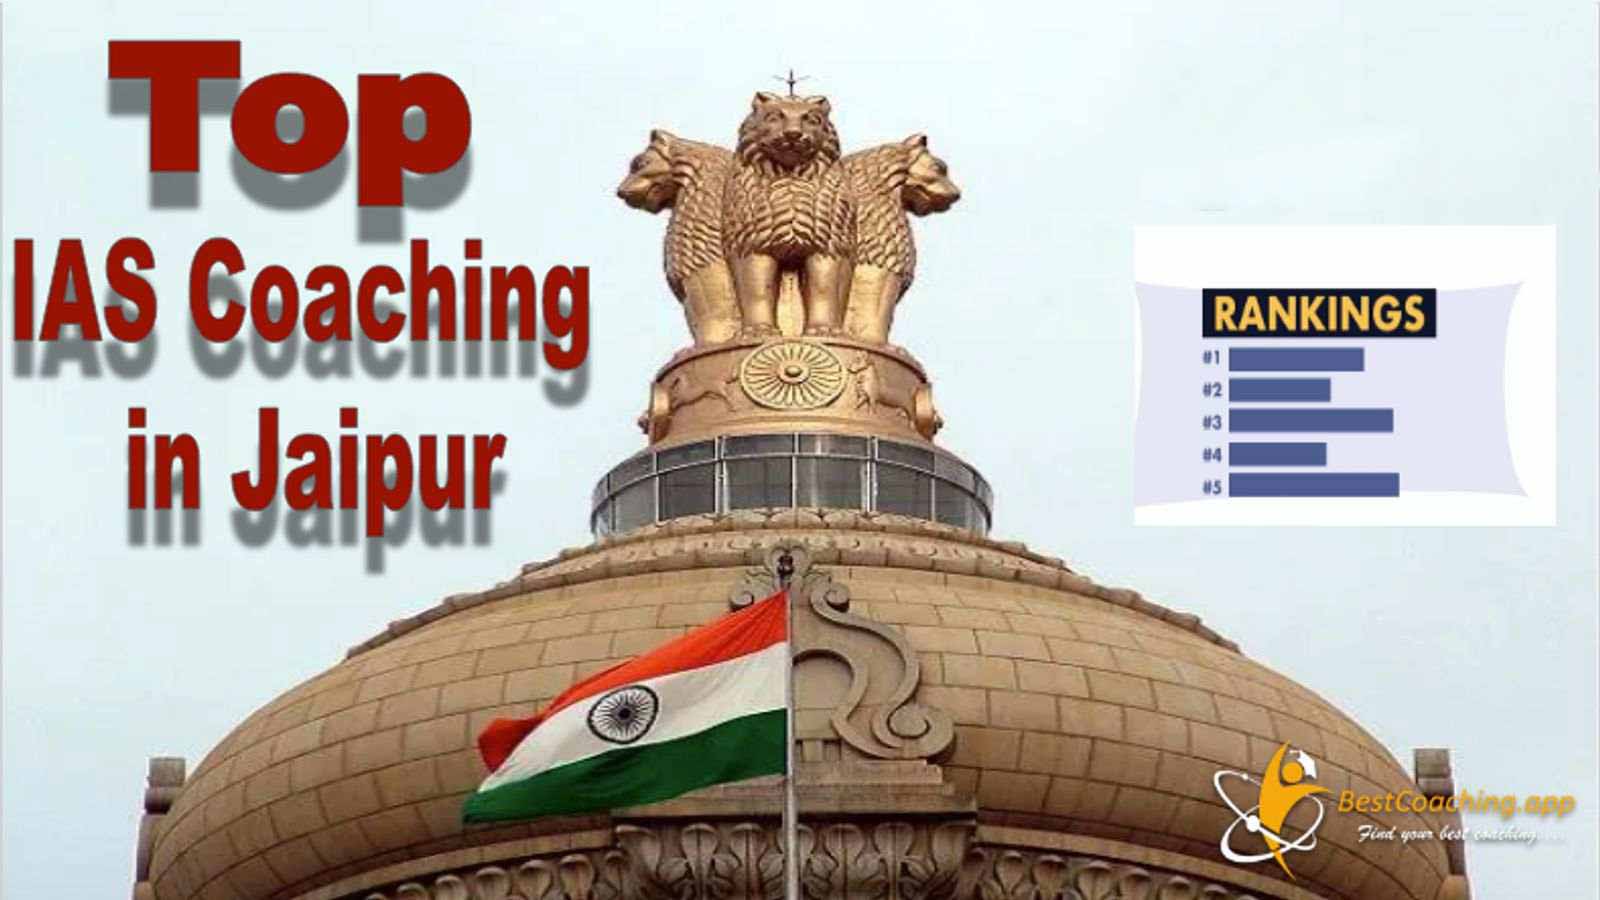 Best IAS Coaching in Jaipur ranking